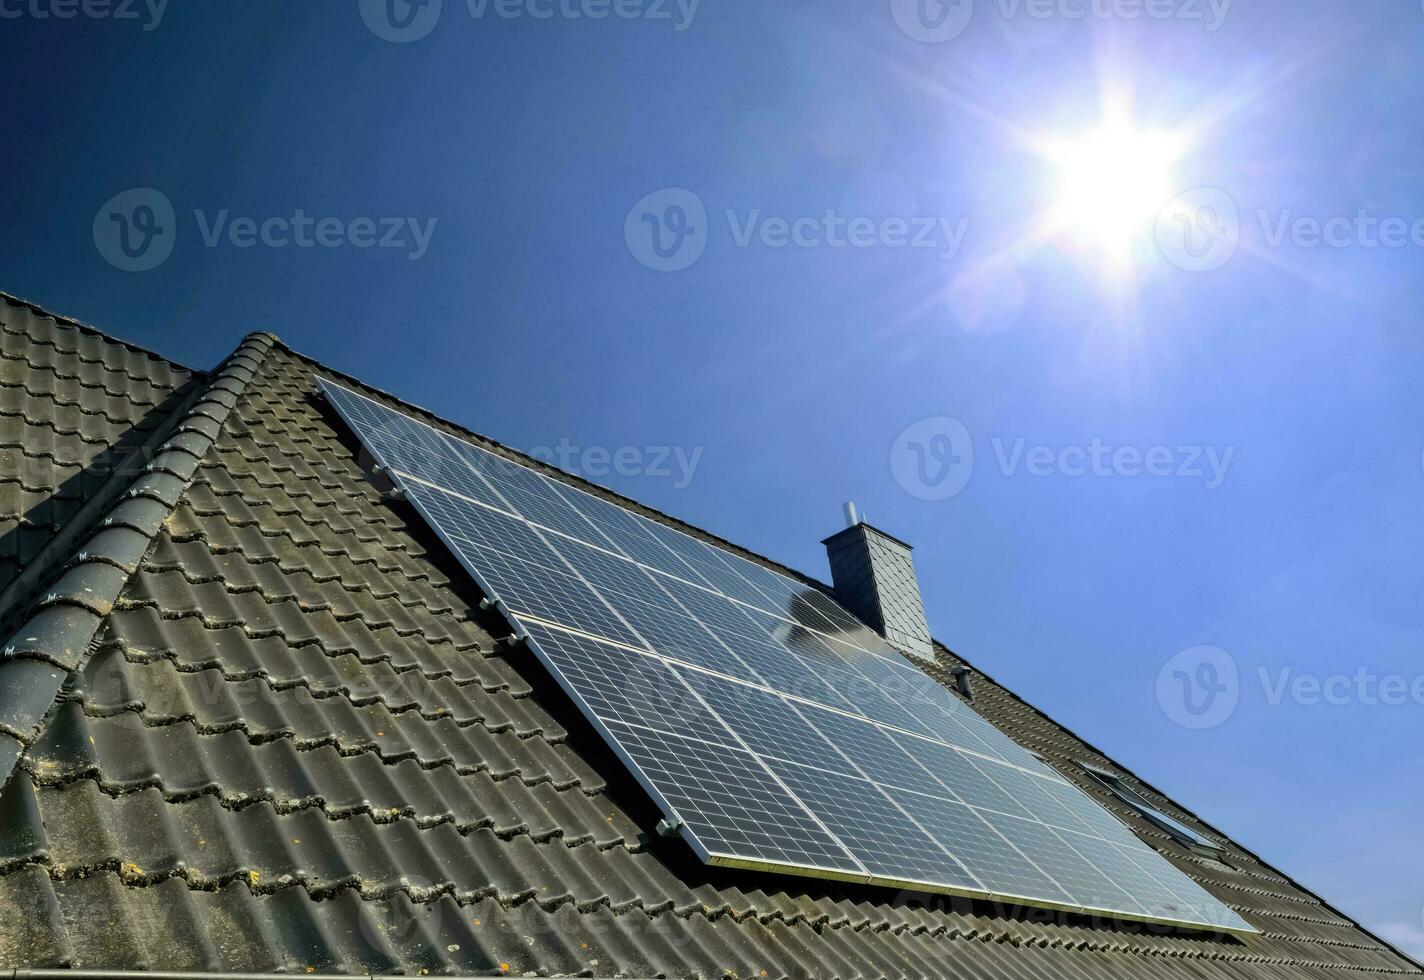 painéis solares produzindo energia limpa em um telhado de uma casa residencial foto